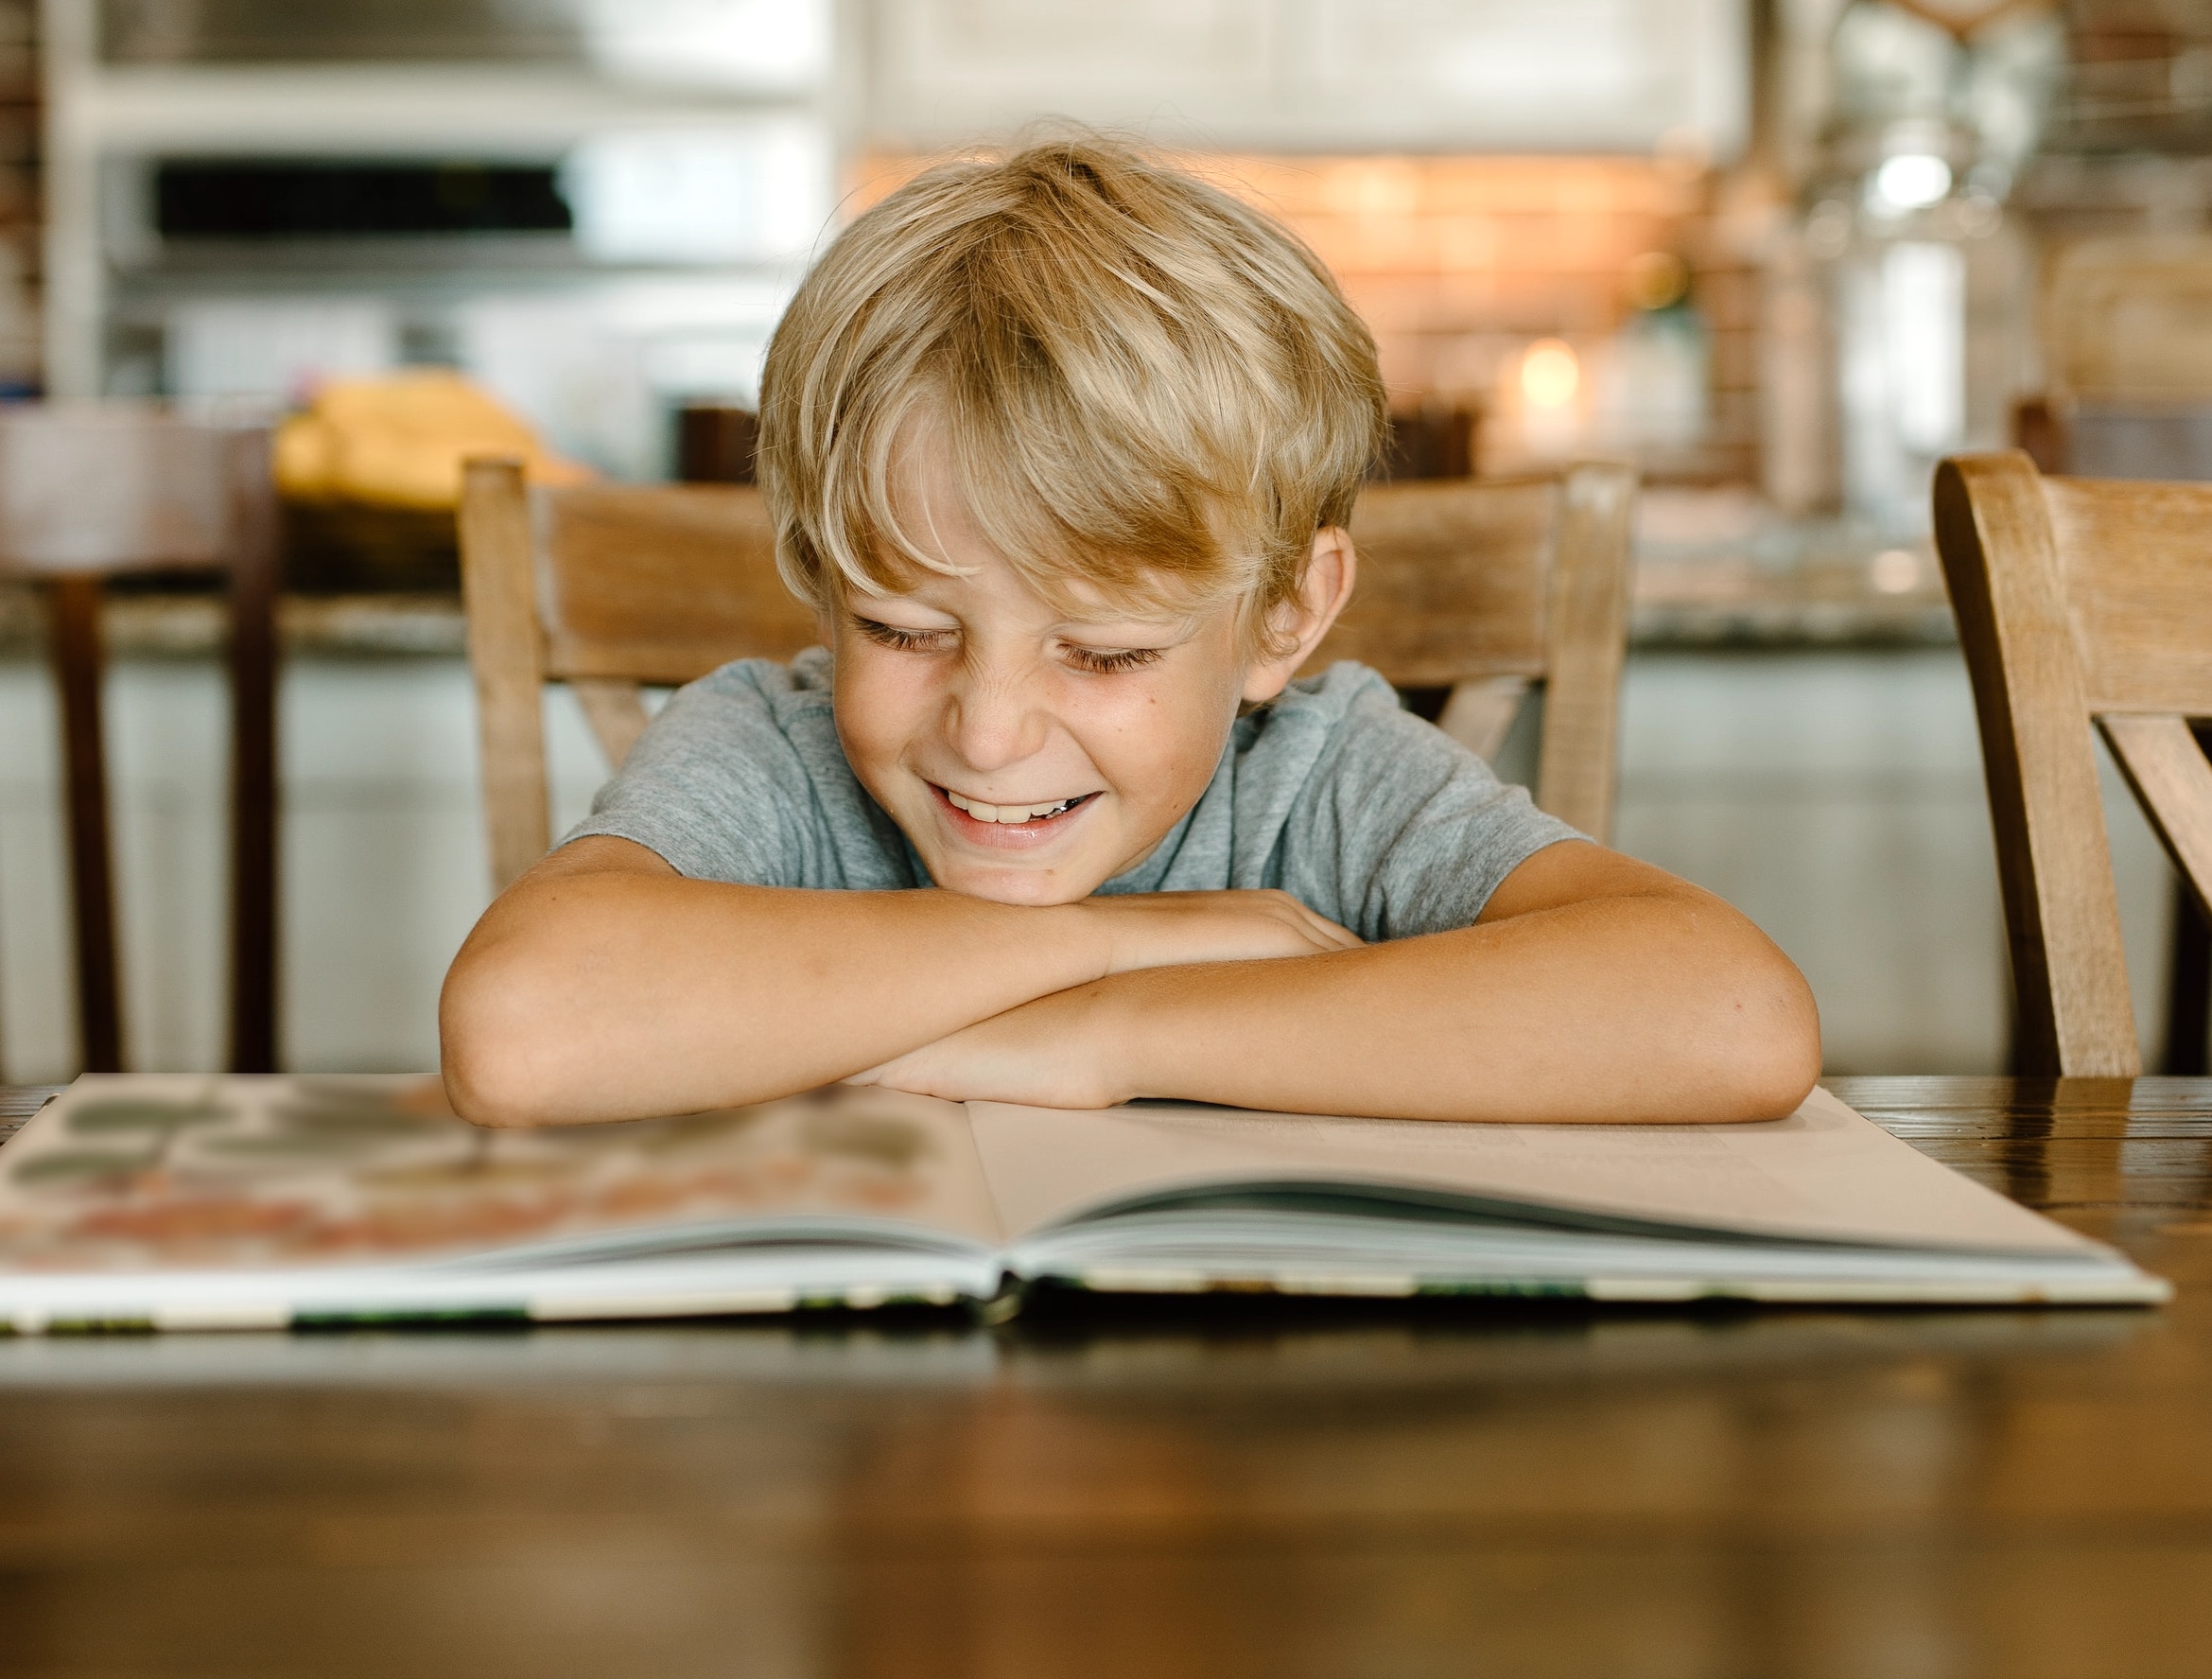 Předčítání a společné čtení knih se opakovaně zmiňuje jako jeden z největších faktorů, které u dětí rozvíjejí lásku ke knihám.